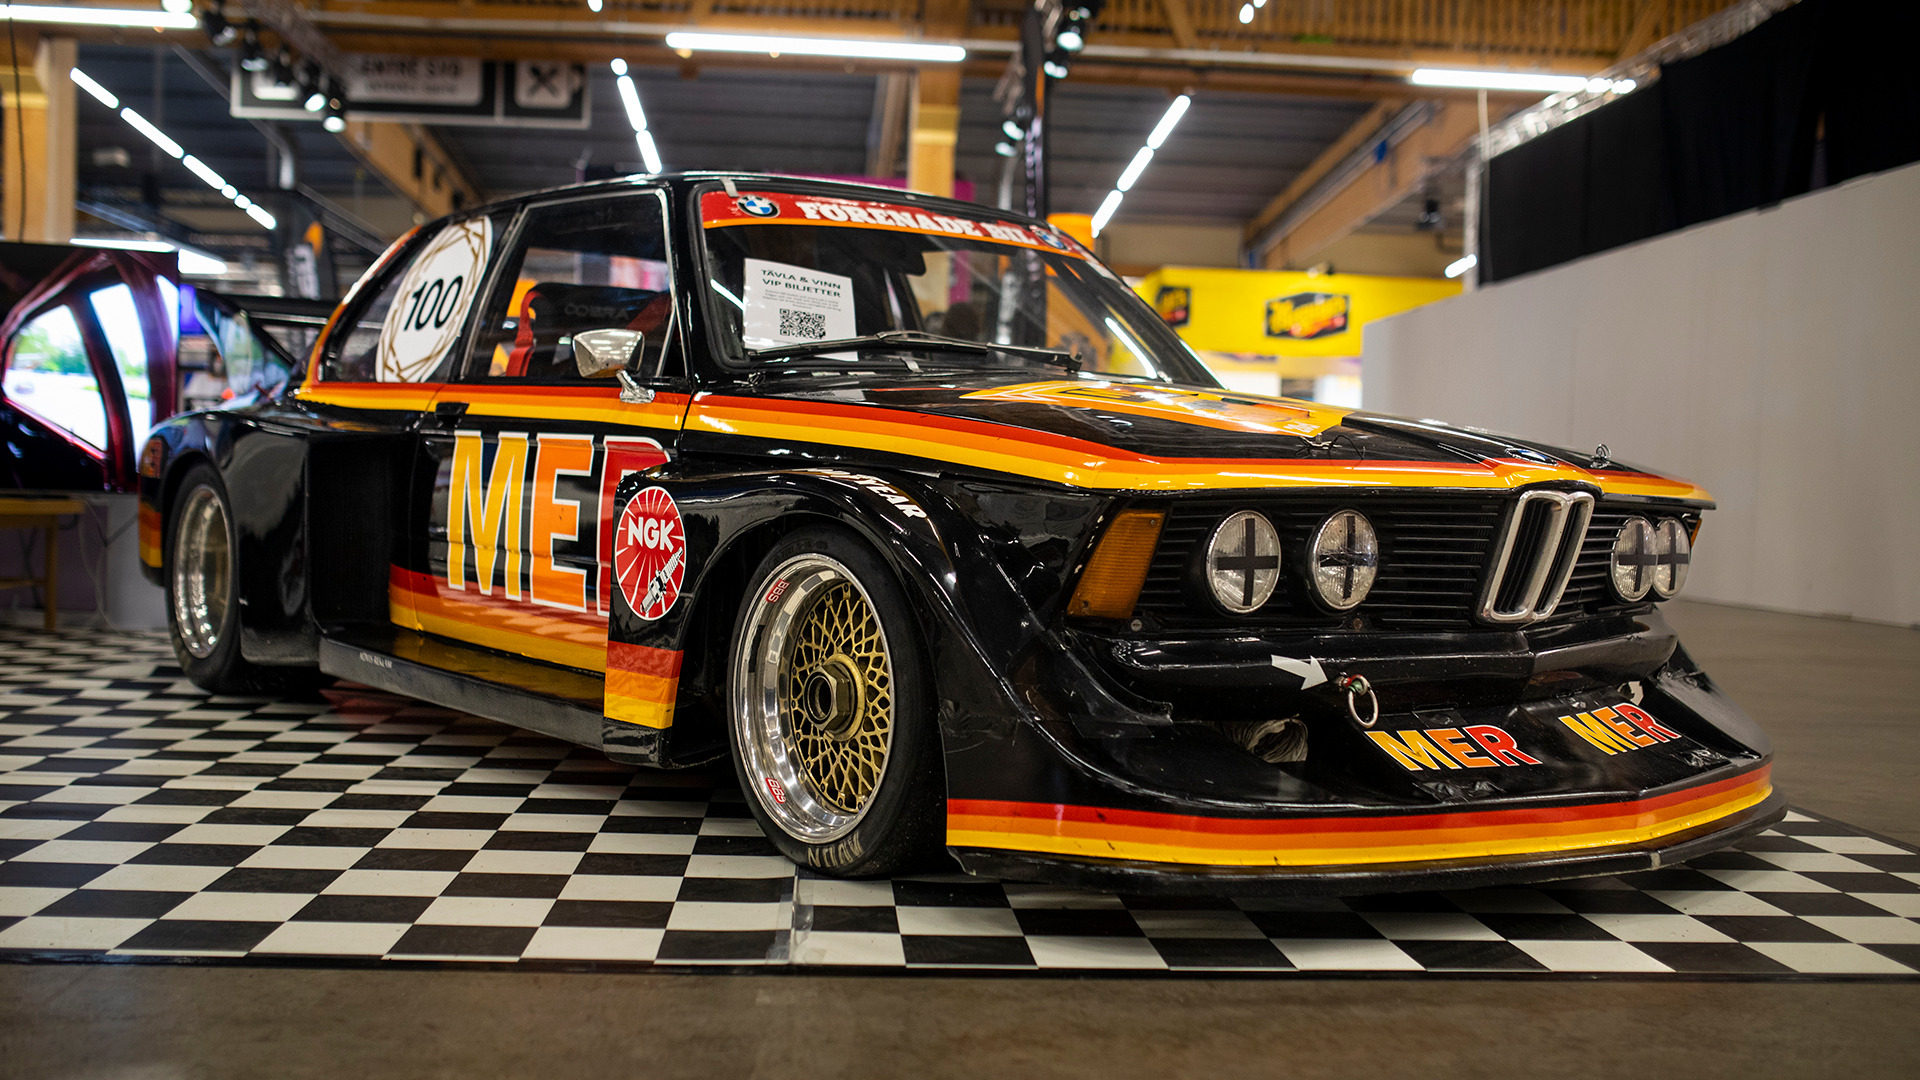 Sprangende BMW 320 fra 1975. Bilen ble brukt innen Gruppe V Racing av Bo Emanuelsson, og tok hjem to svenske mesterskap i 1975 og 1976.